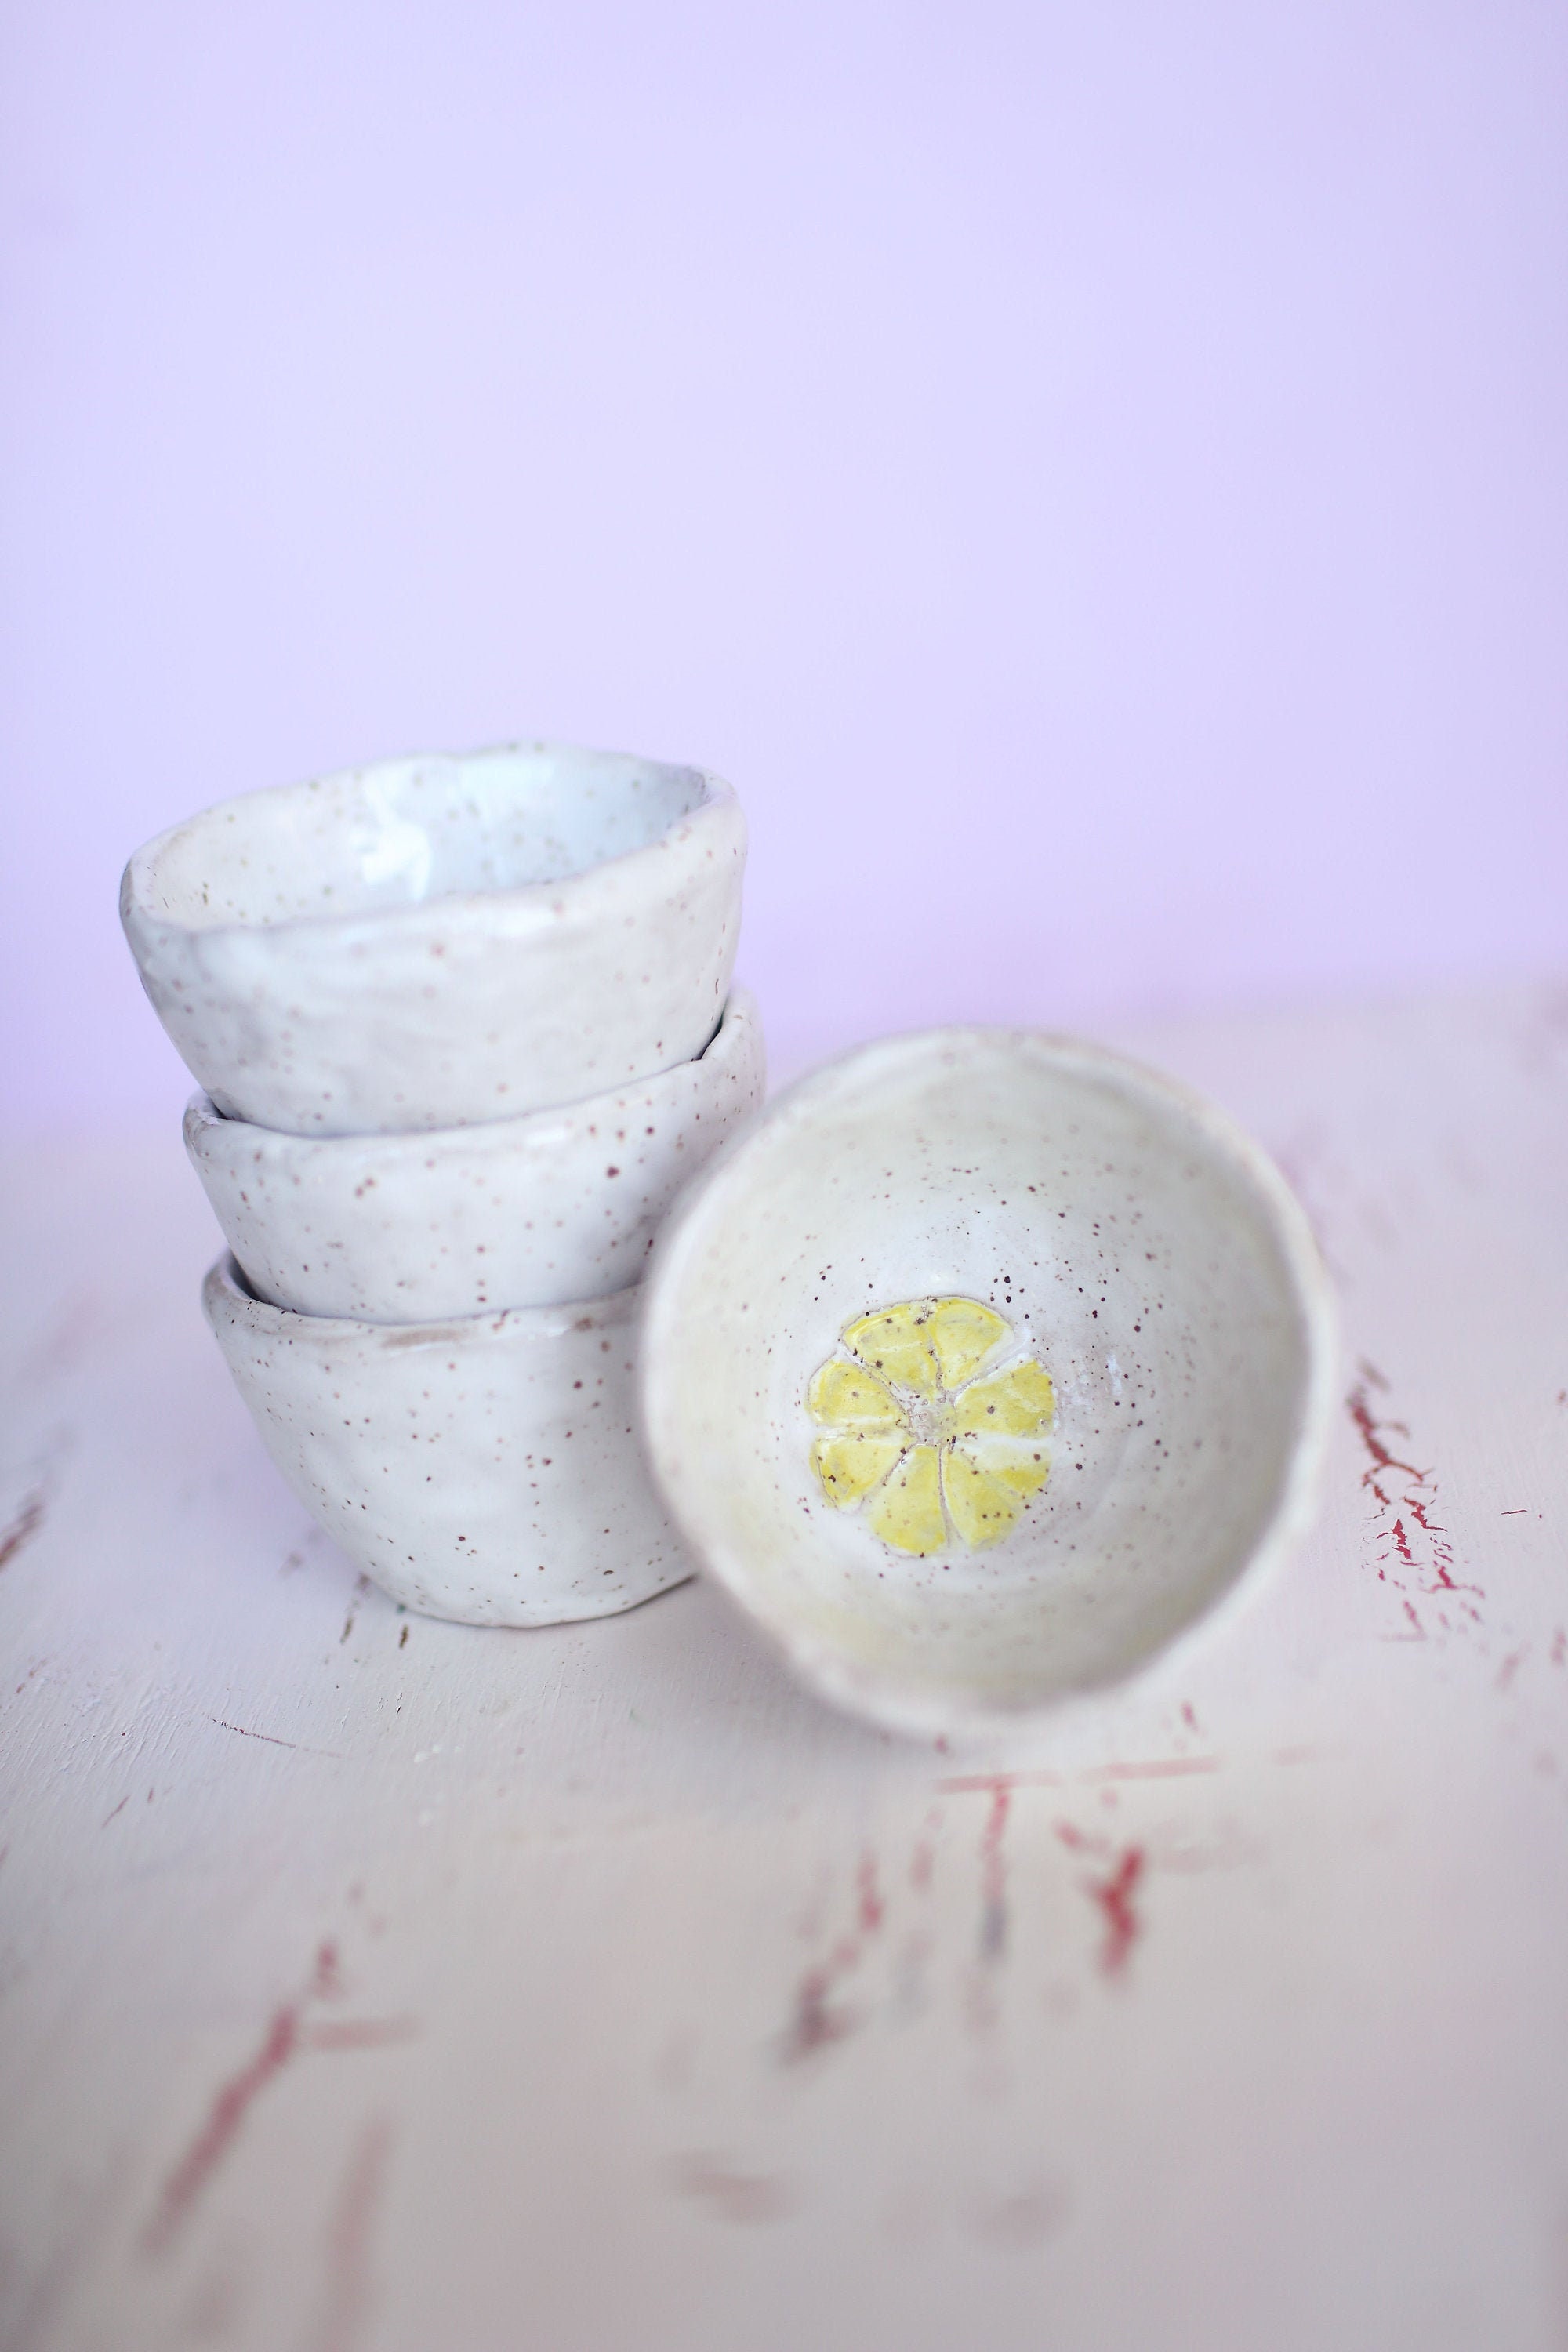 6x Lemon Small Ceramic Bowls Set Pieces Handmade Fruit Shapped